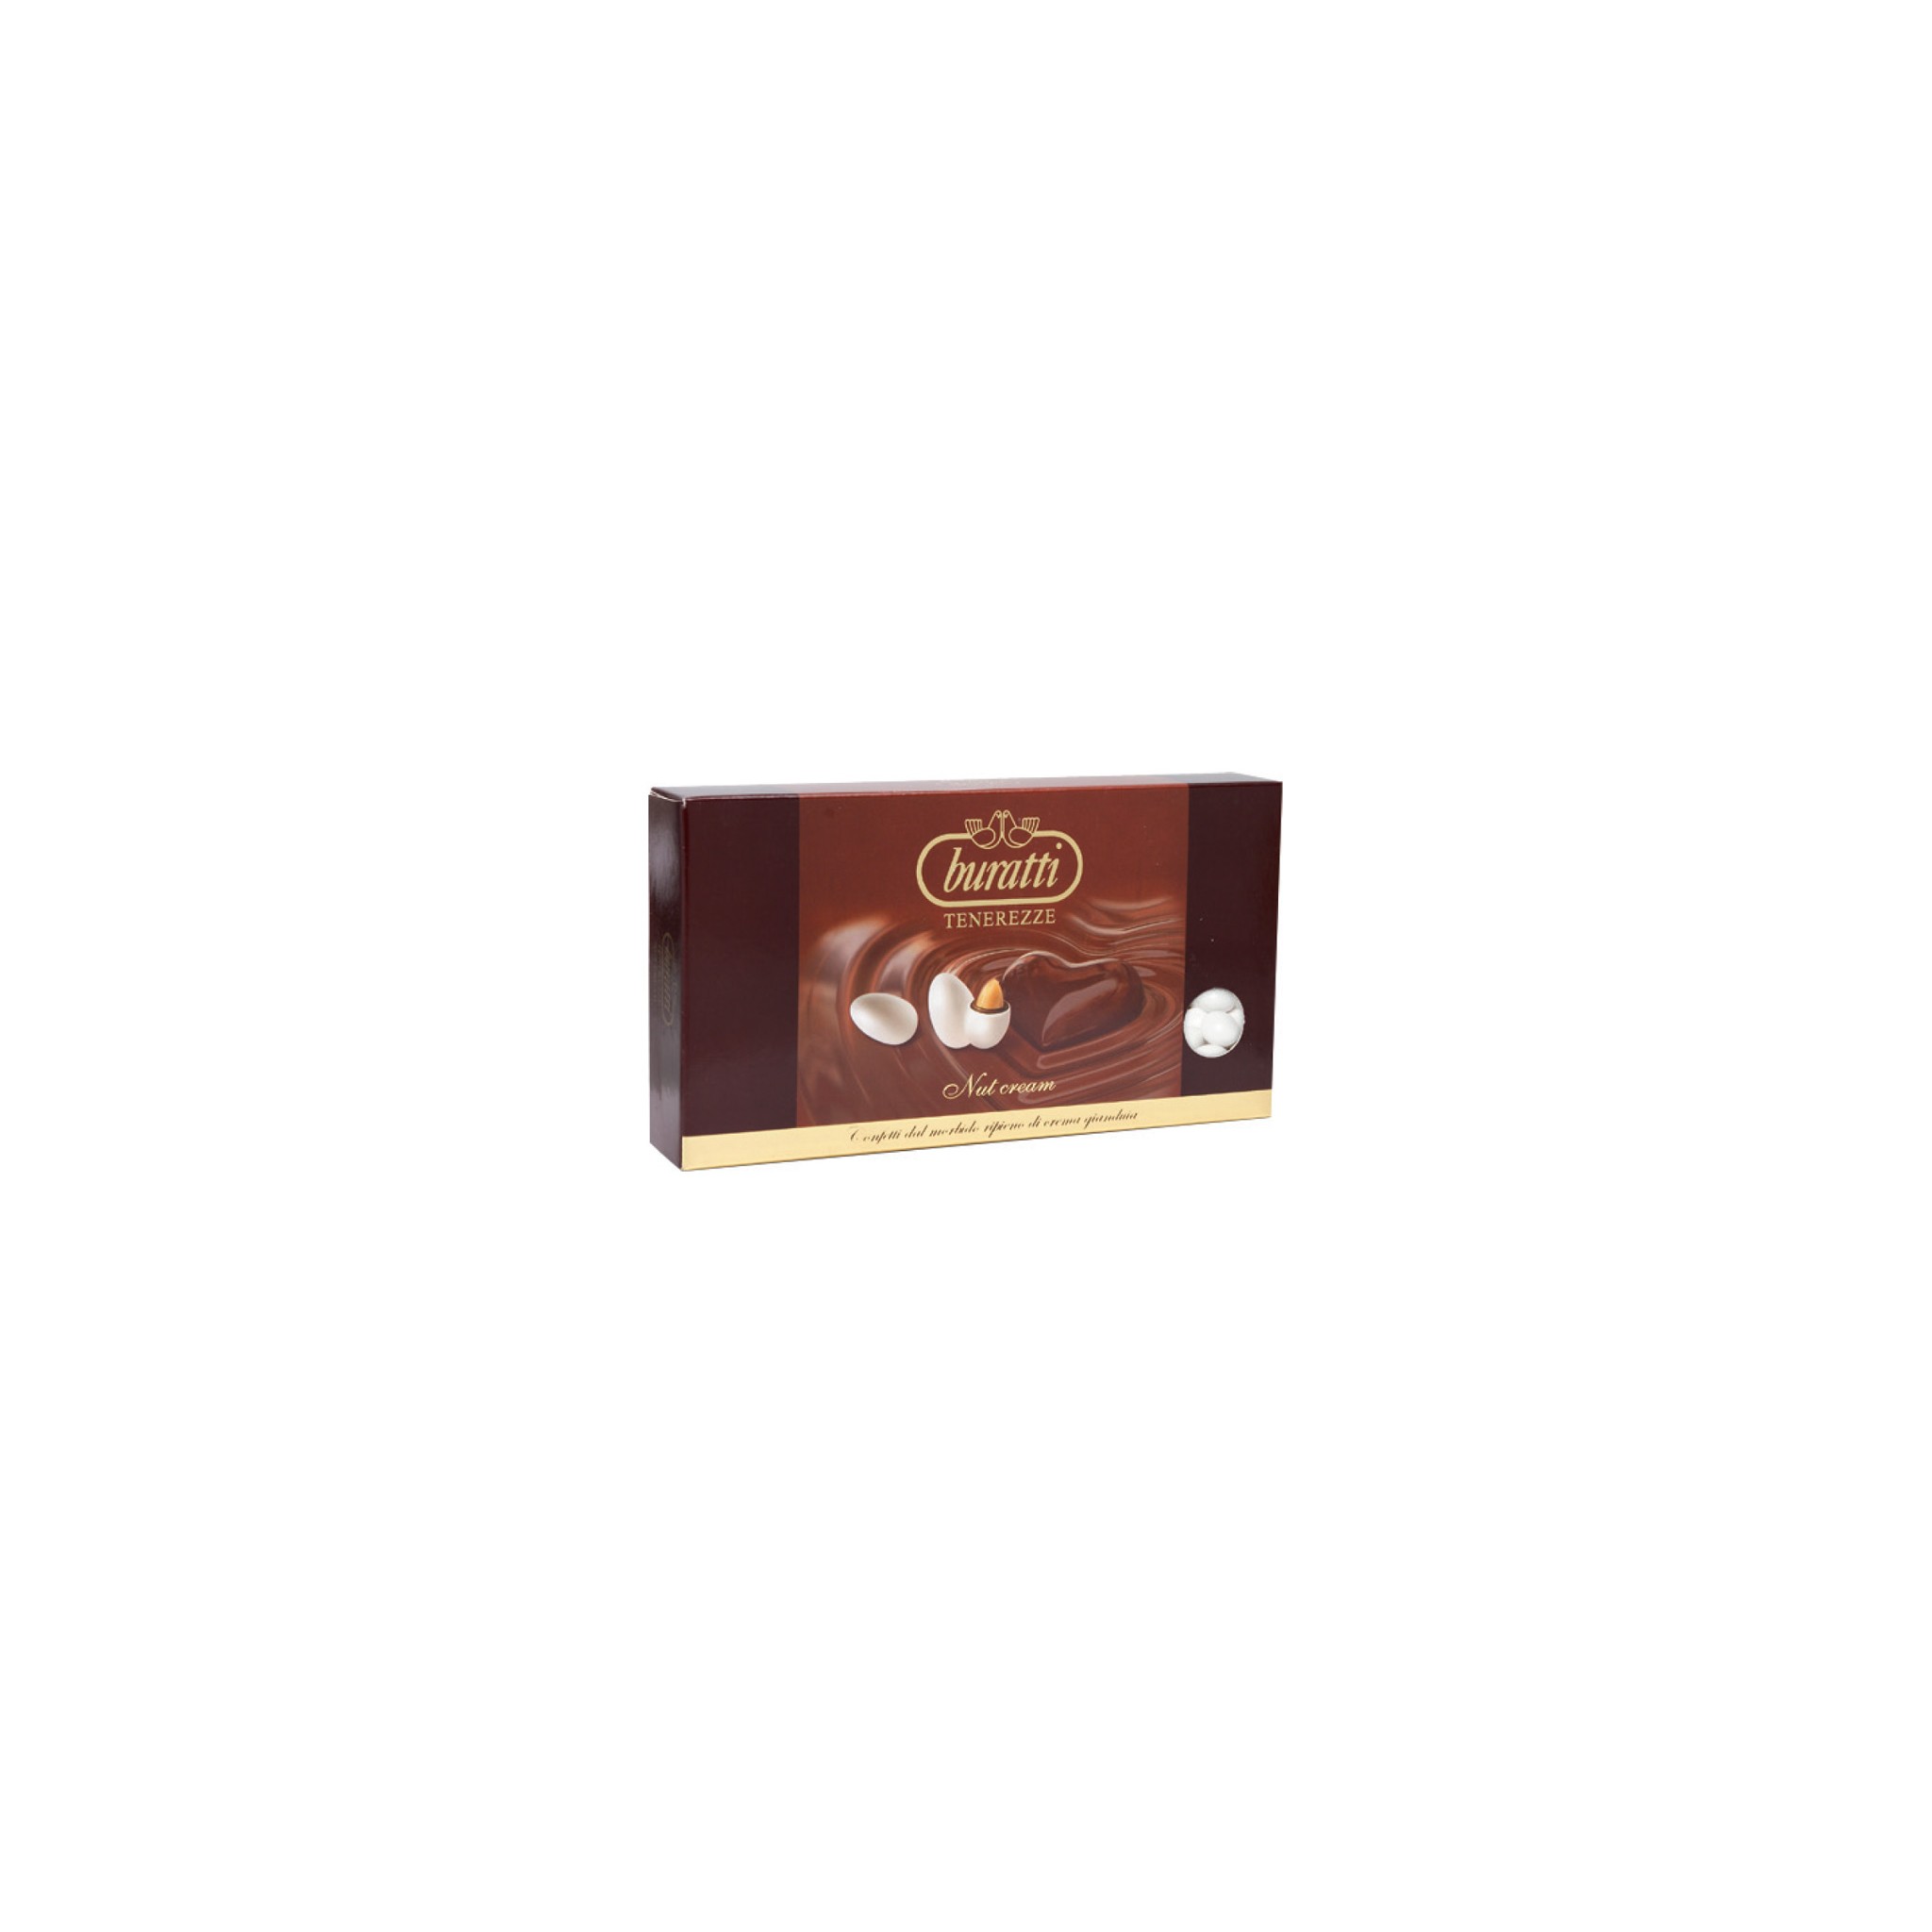 Cream and chocolate “Tenerezze”